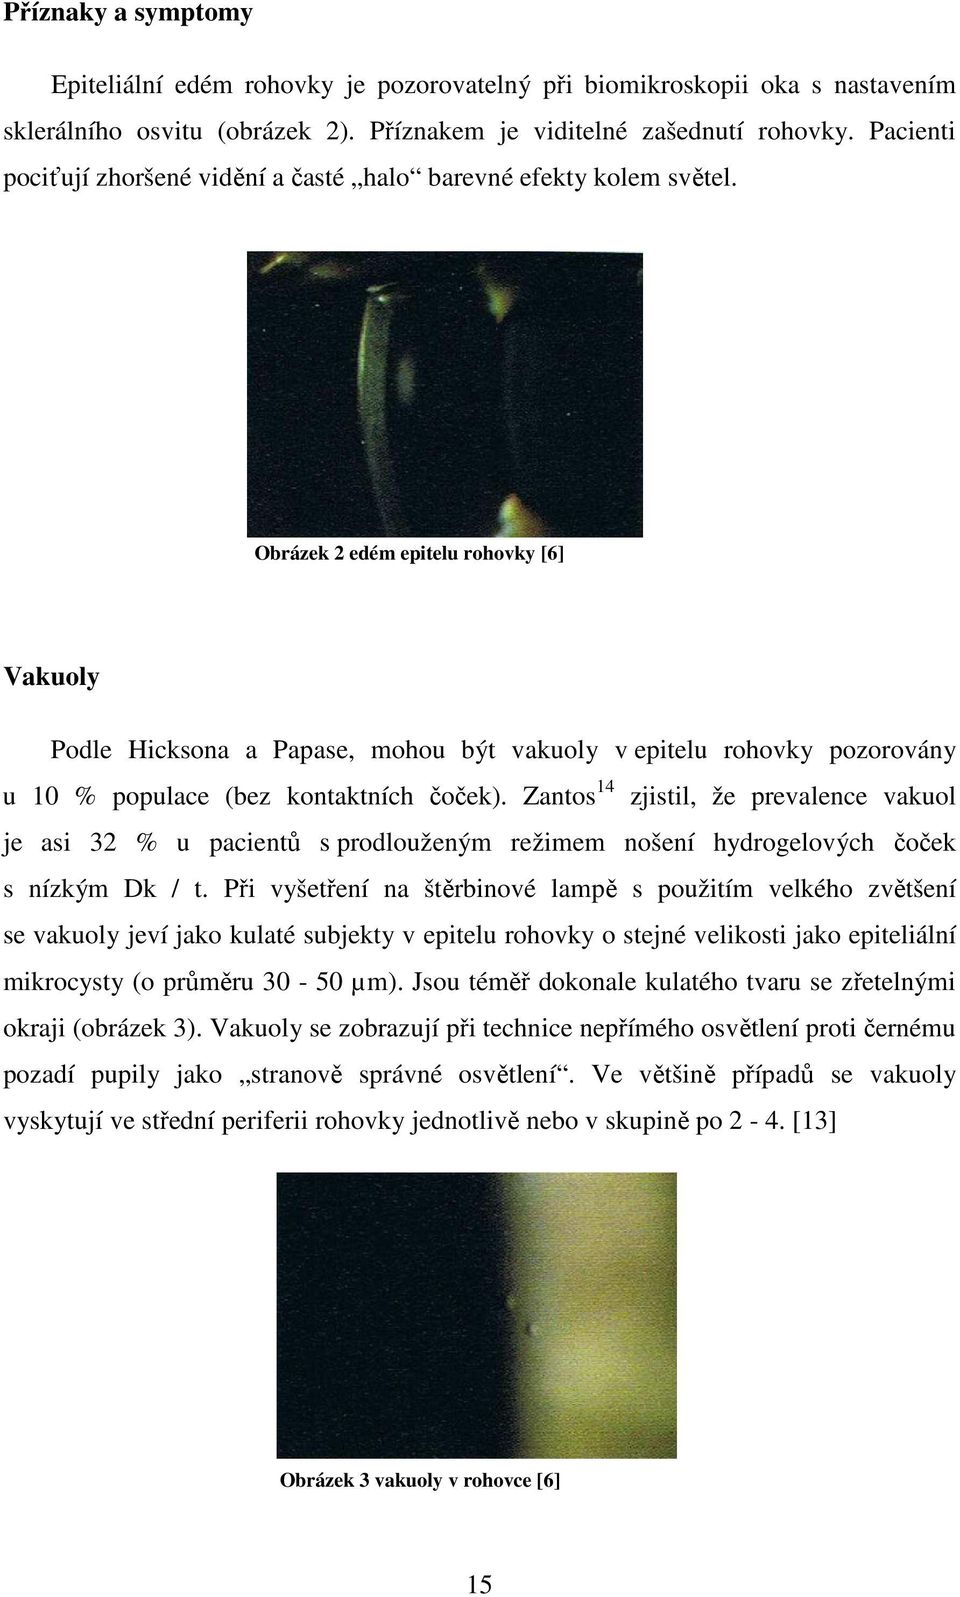 Obrázek 2 edém epitelu rohovky [6] Vakuoly Podle Hicksona a Papase, mohou být vakuoly v epitelu rohovky pozorovány u 10 % populace (bez kontaktních čoček).